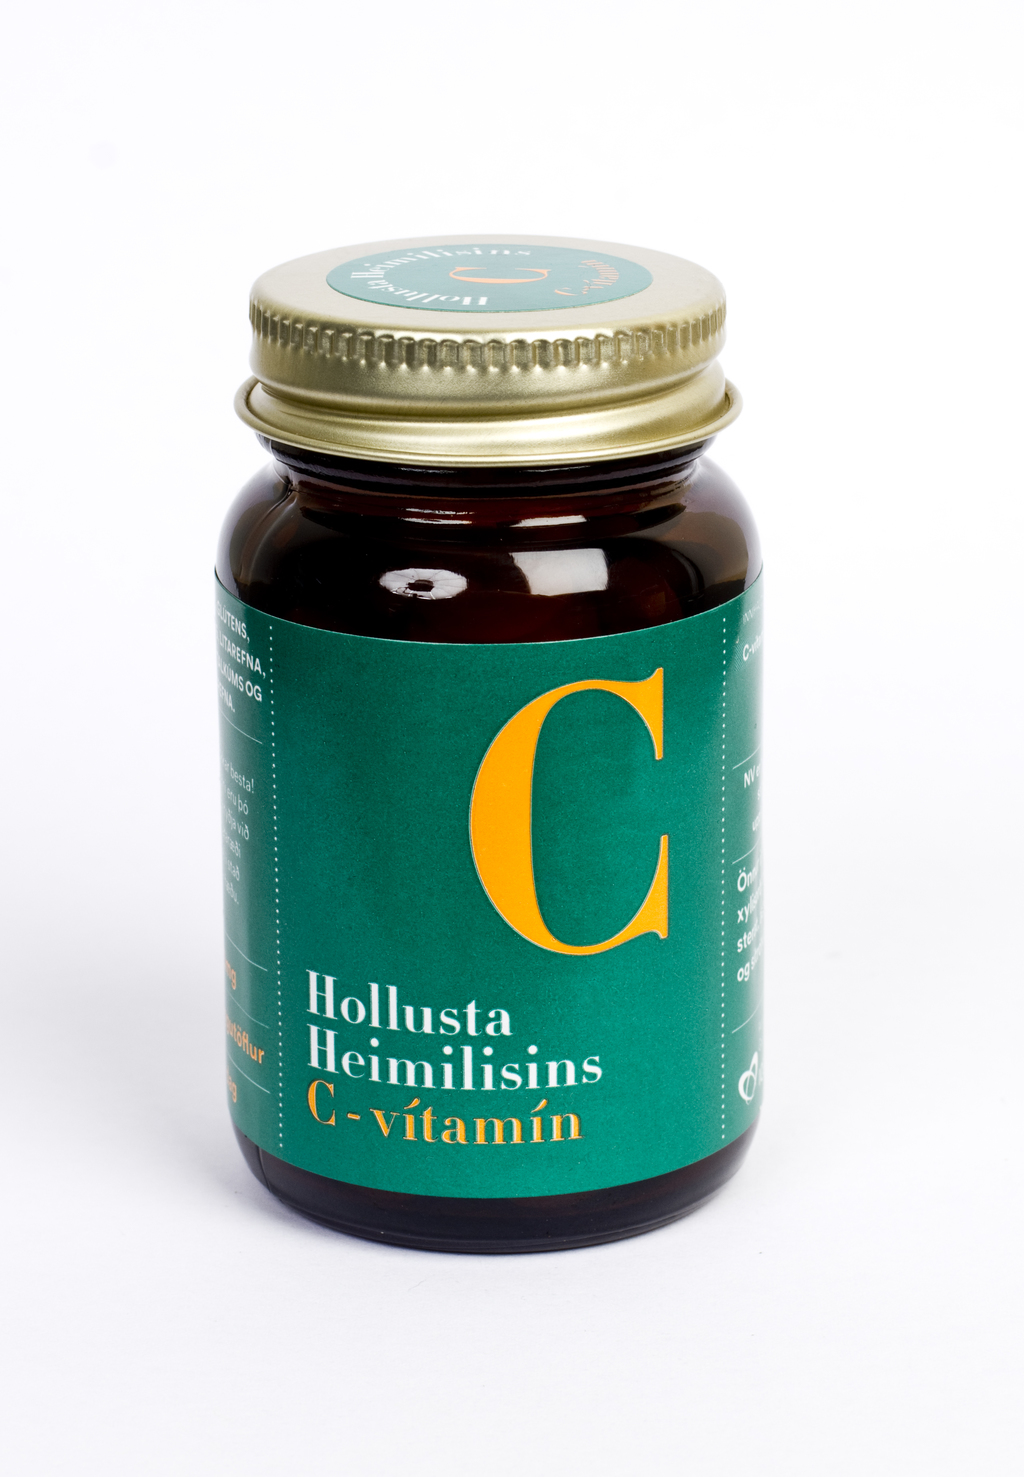 Hollusta Heimilisins C-vítamín 100 mg